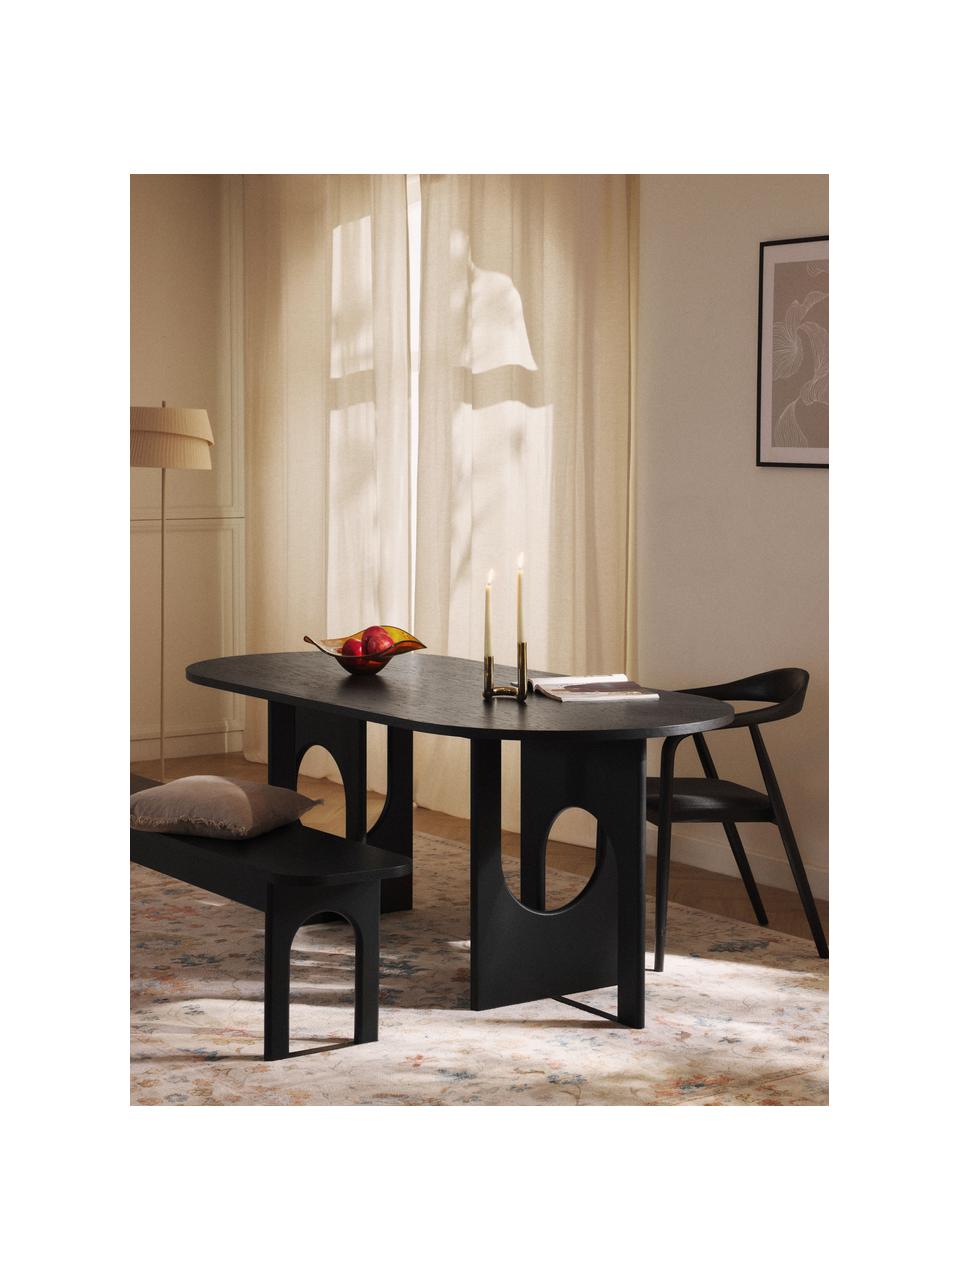 Oválný jídelní stůl Apollo, v různých velikostech, Dubové dřevo, černě lakované, Š 200 cm, H 90 cm